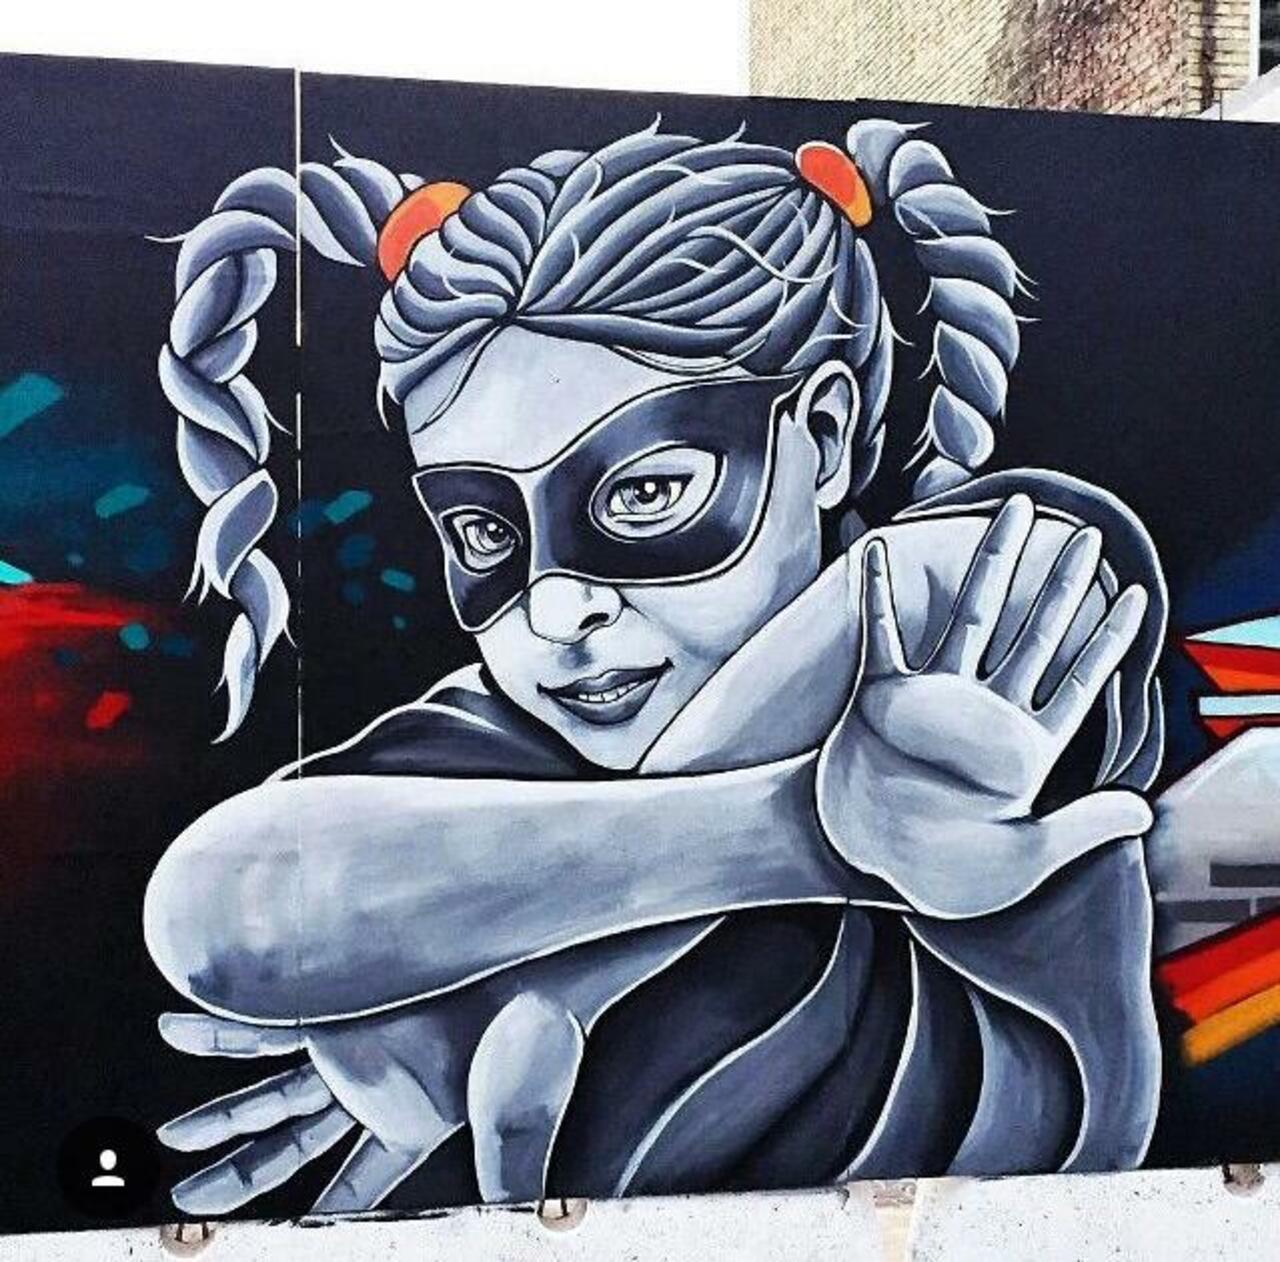 New tumblr post: "Street Art by Stinehvid 

#art #graffiti #mural #streetart http://t.co/BLLK9U3Rdh" http://ift.tt/1G87au5 , IFTTT, Twi…